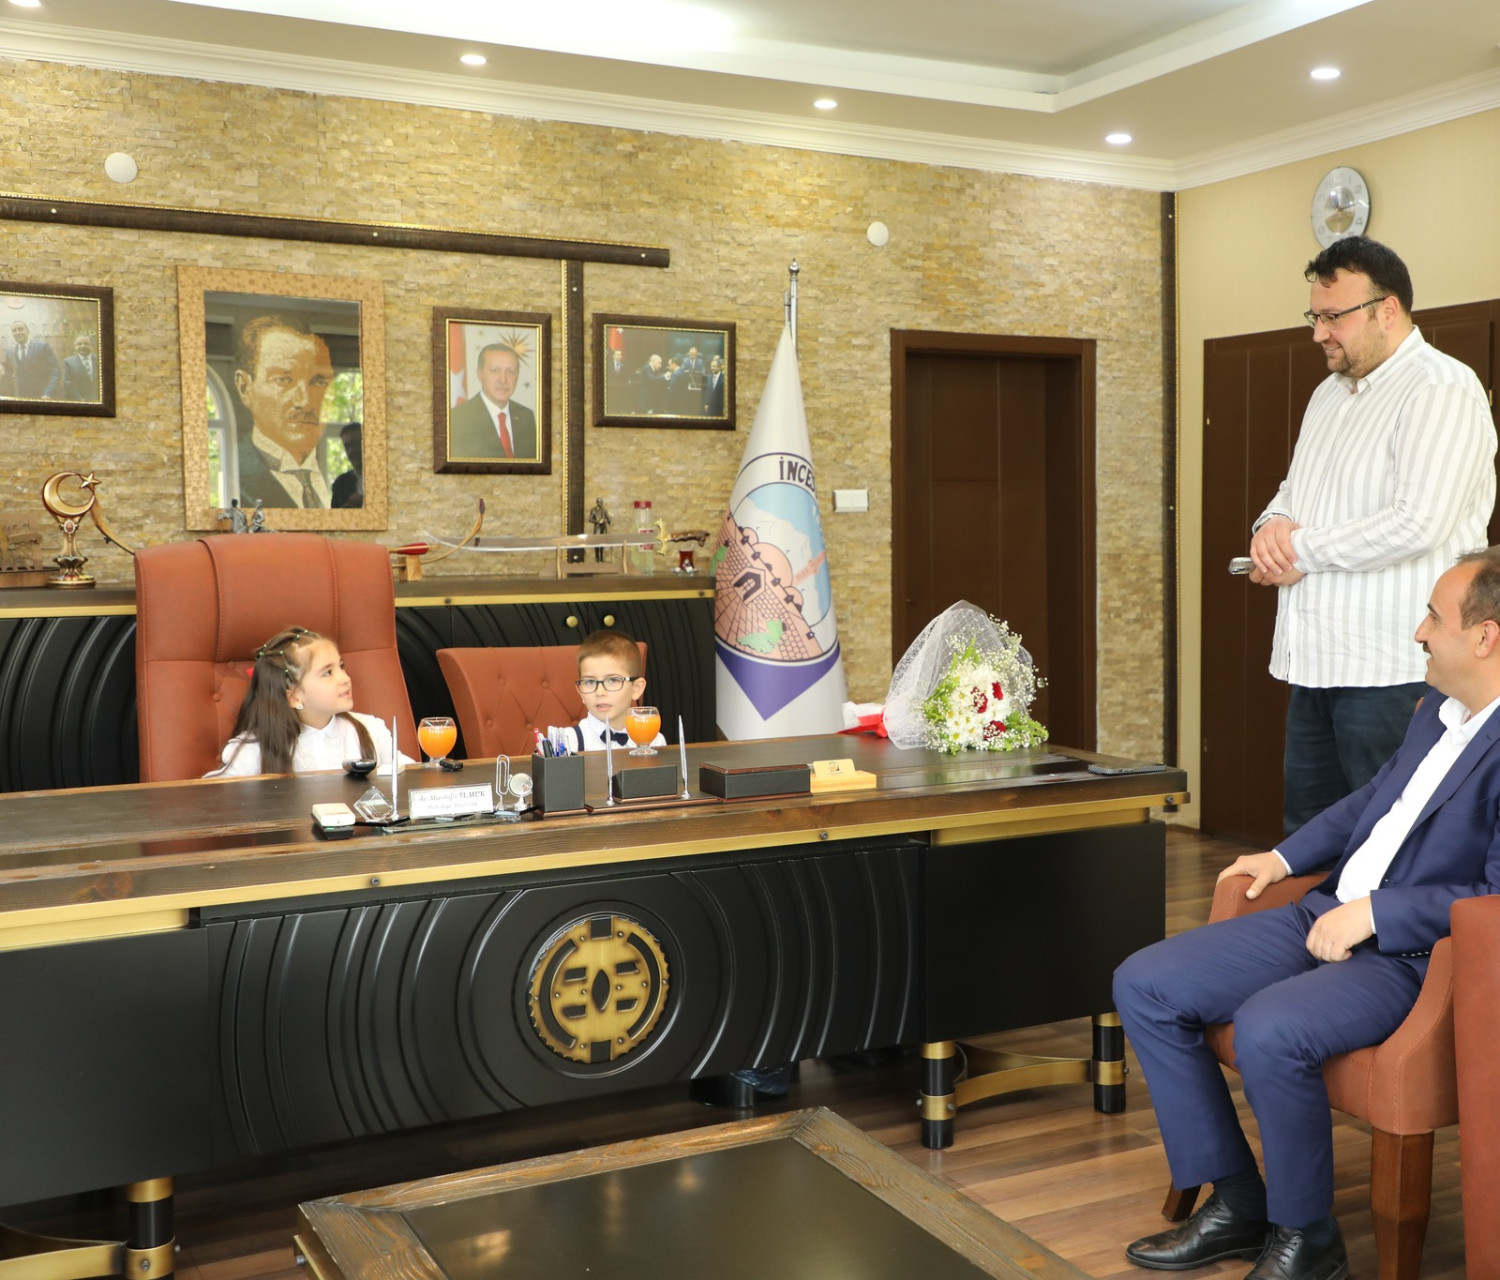 Belediye Başkanımız Av. Mustafa İLMEK, 23 Nisan Ulusal Egemenlik ve Çocuk Bayramında makamını temsili olarak Elif Esila Yıldız ve Mikail Doğan'a bıraktı.